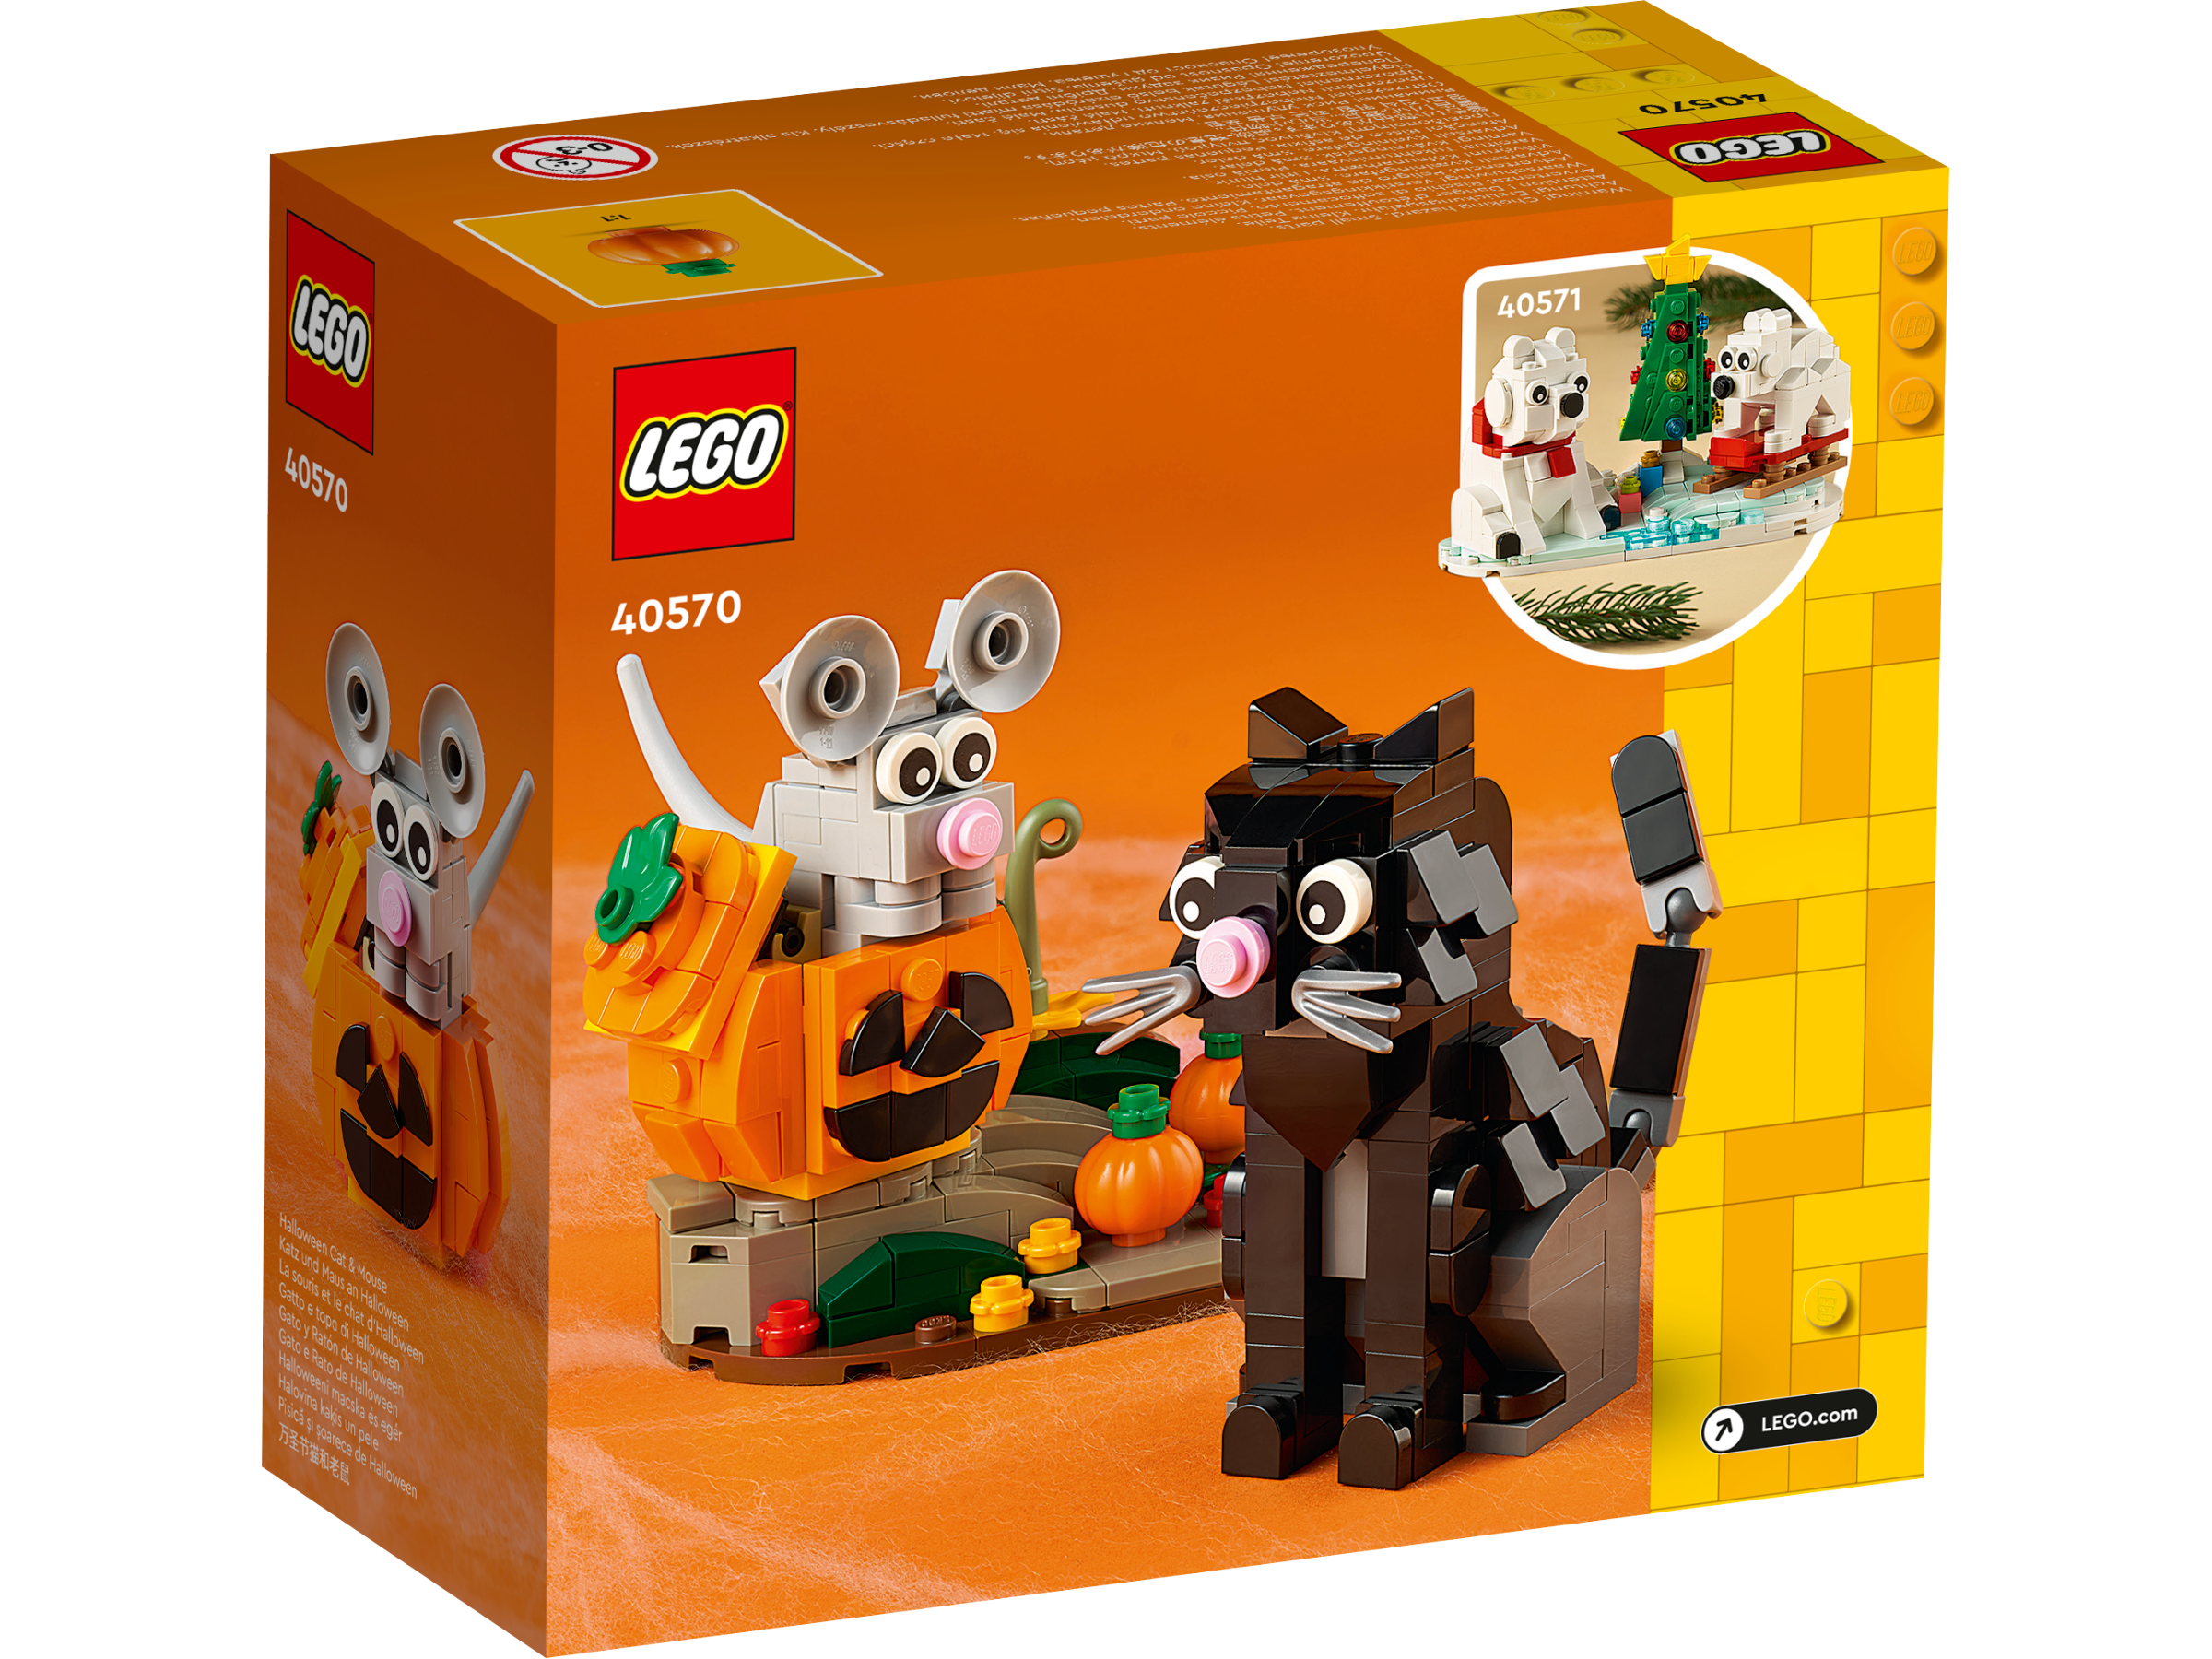 LEGO 40570 Katz und Maus an Halloween